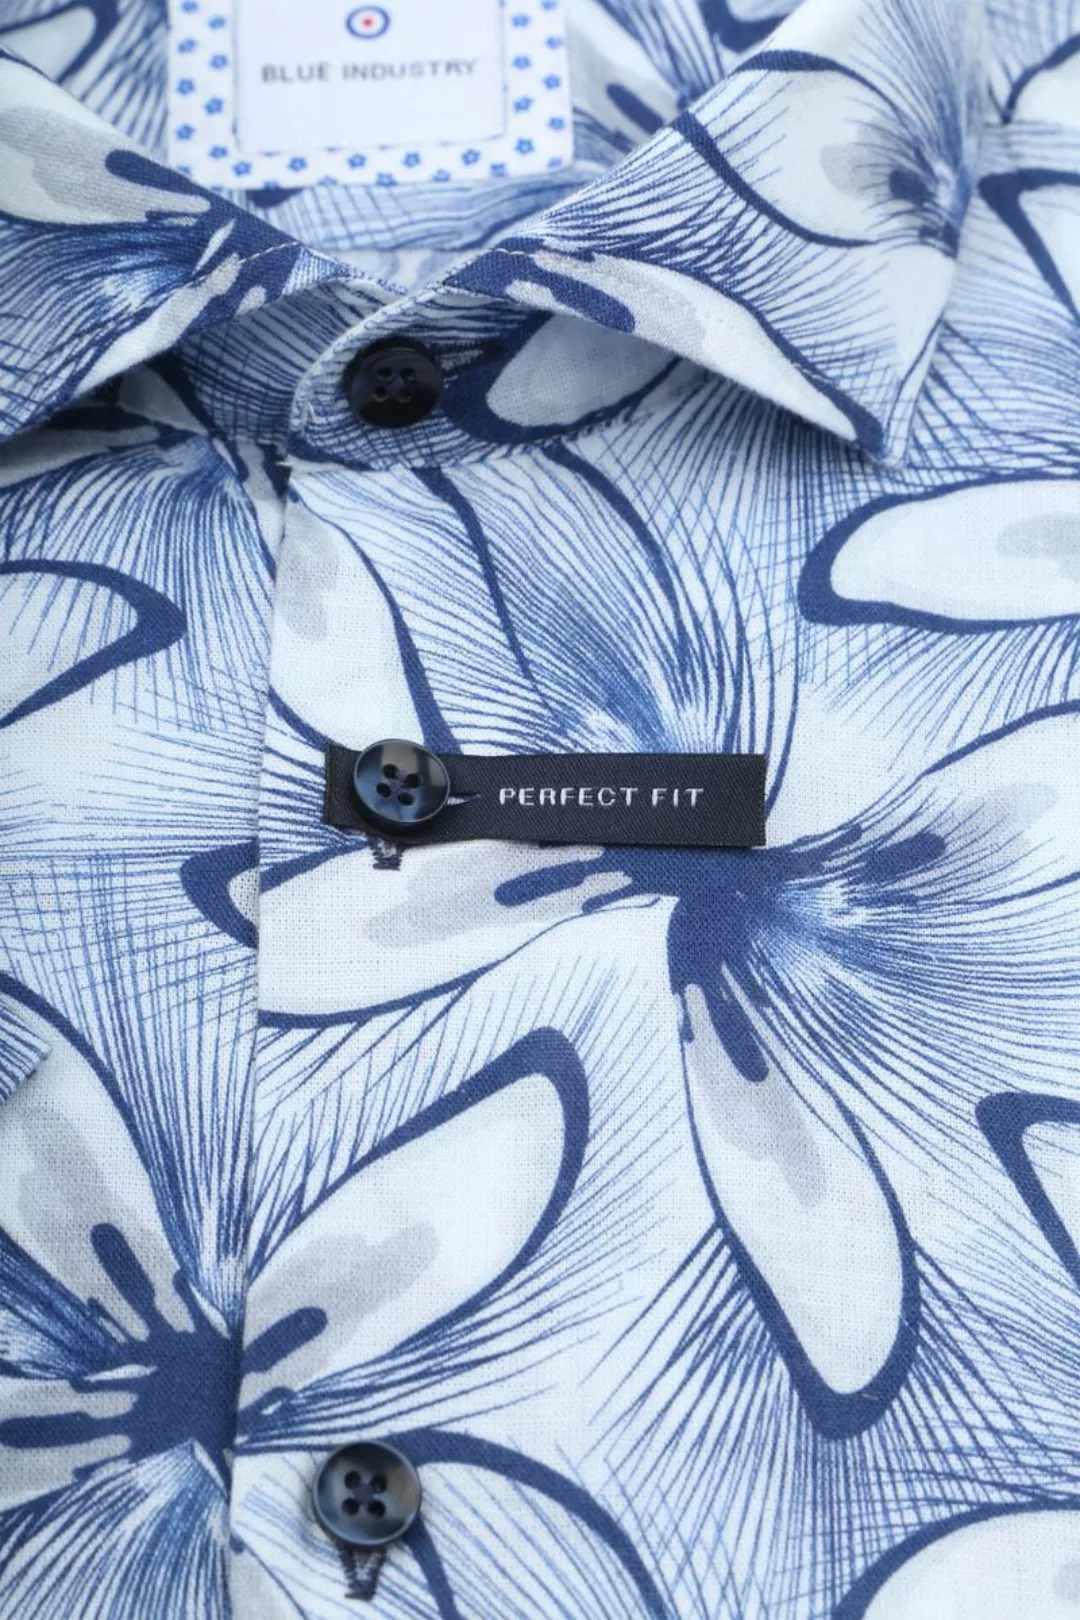 Blue Industry Short Sleeve Hemd Leinen Druck Blau - Größe 40 günstig online kaufen